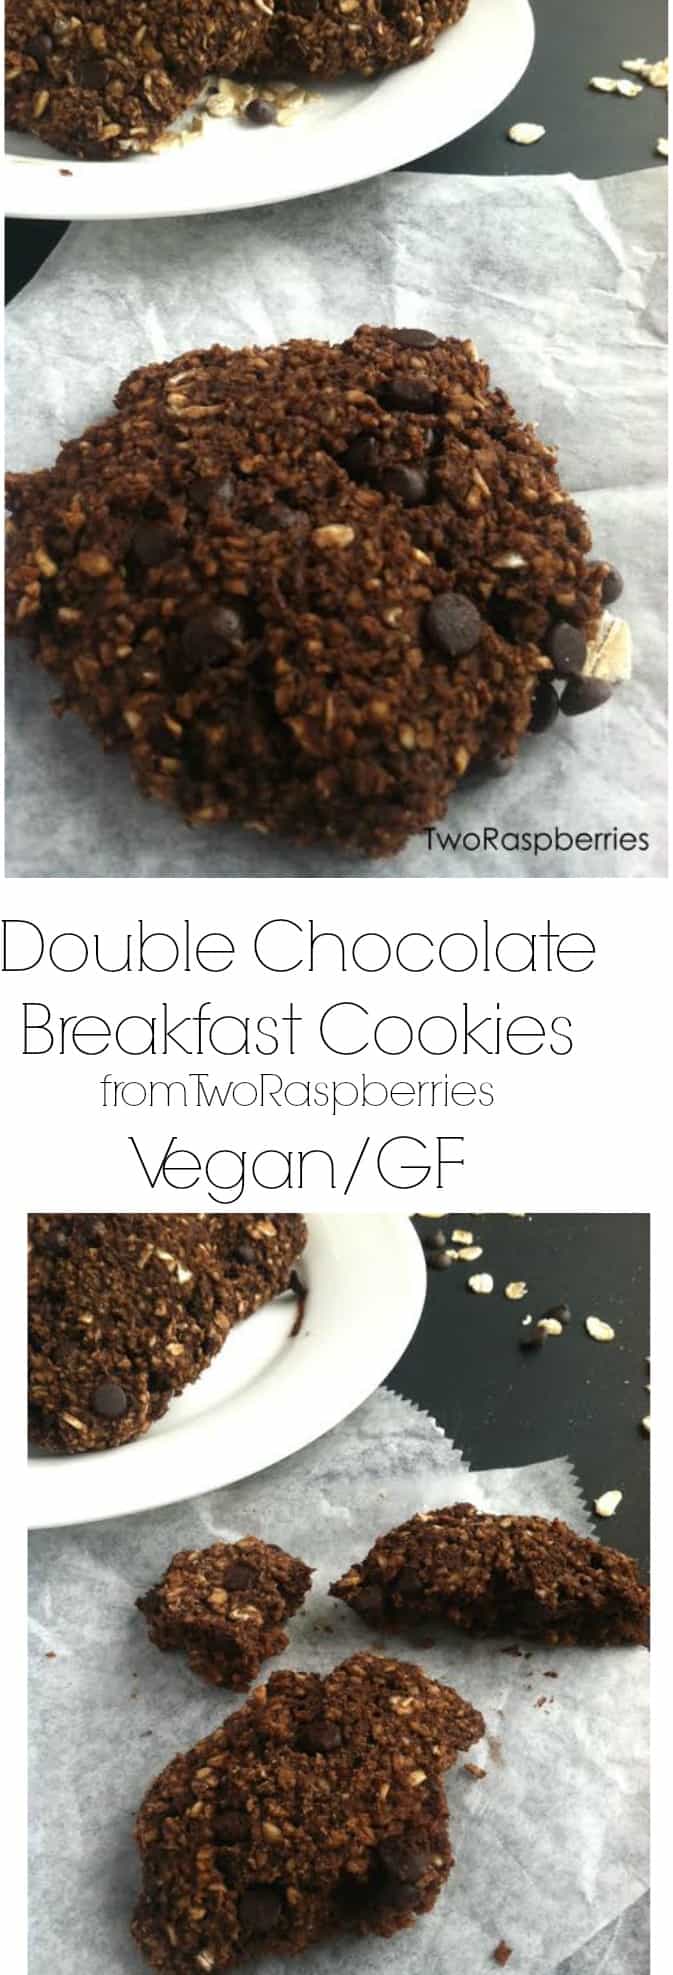 Double Chocolate Breakfast Cookies